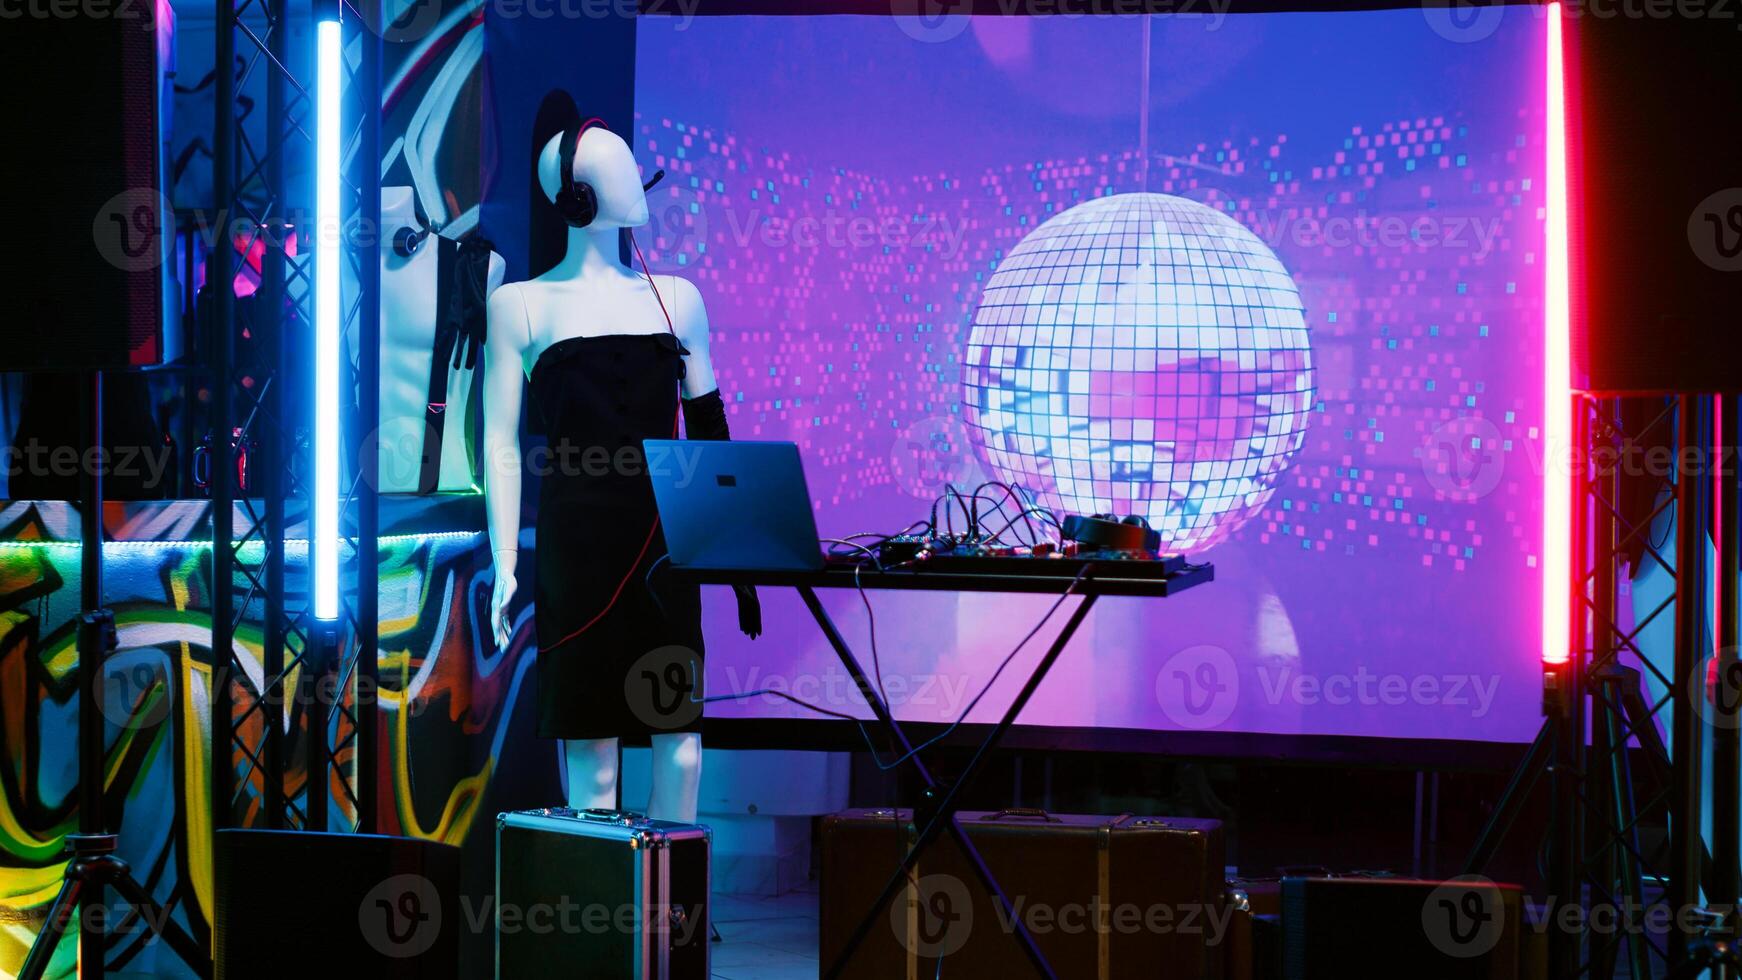 leeren Klang Bühne mit dj Panel benutzt zum Leben Musik- Show beim Nachtclub, Audio- Mischen Bahnhof. tanzen Fußboden mit Scheinwerfer und Disko Ball beim Diskothek, Clubbing und Party machen Konzept. foto